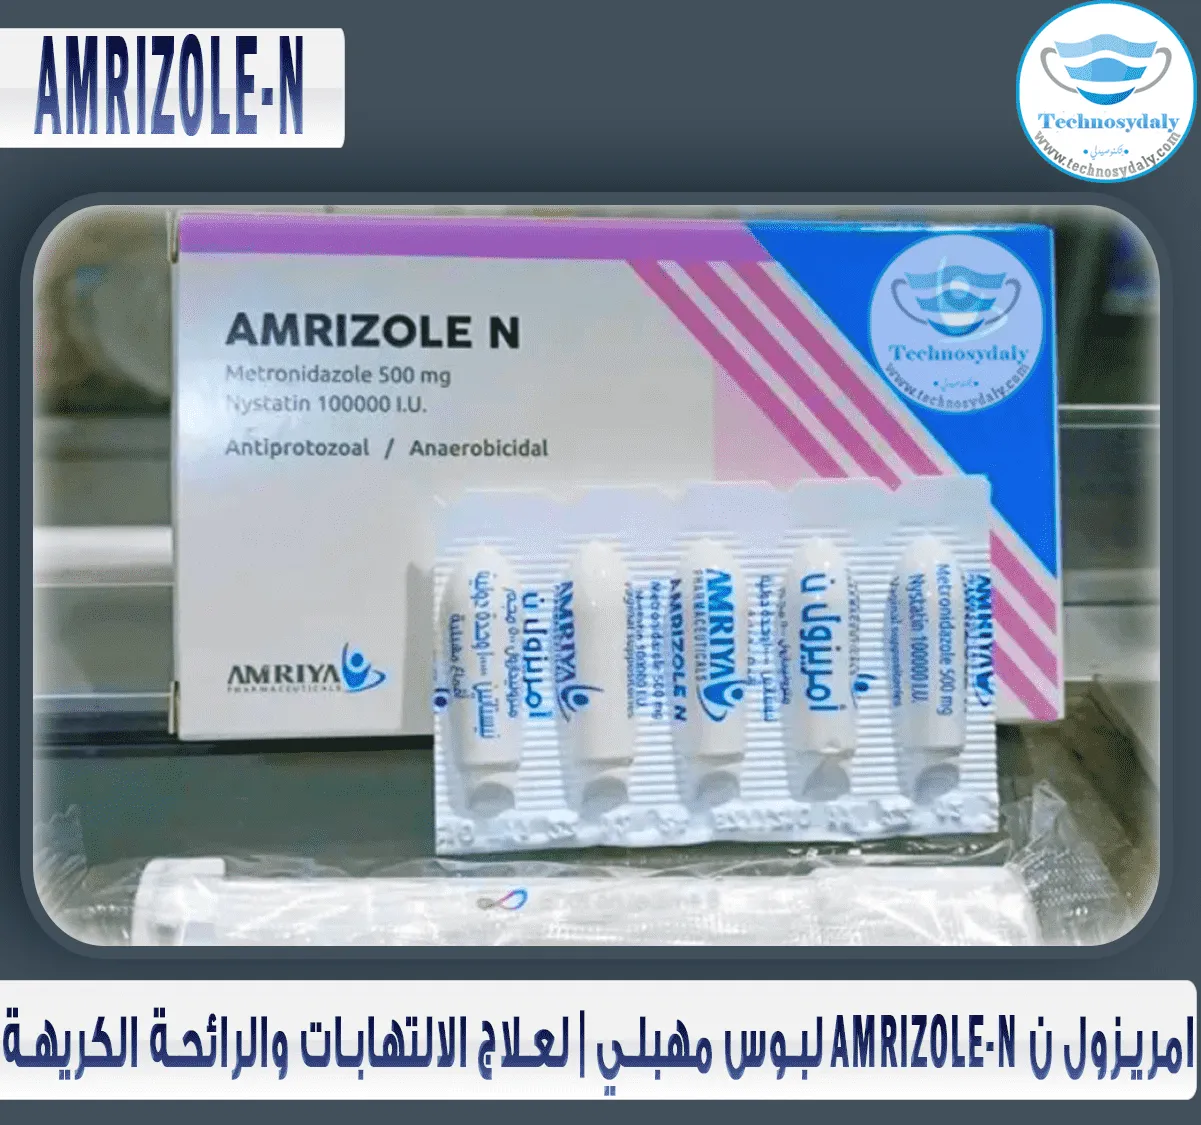 امريزول-ن-amrizole-n-لبوس-مهبلي-لعلاج-الالتهابات-والرائحة-الكريهة